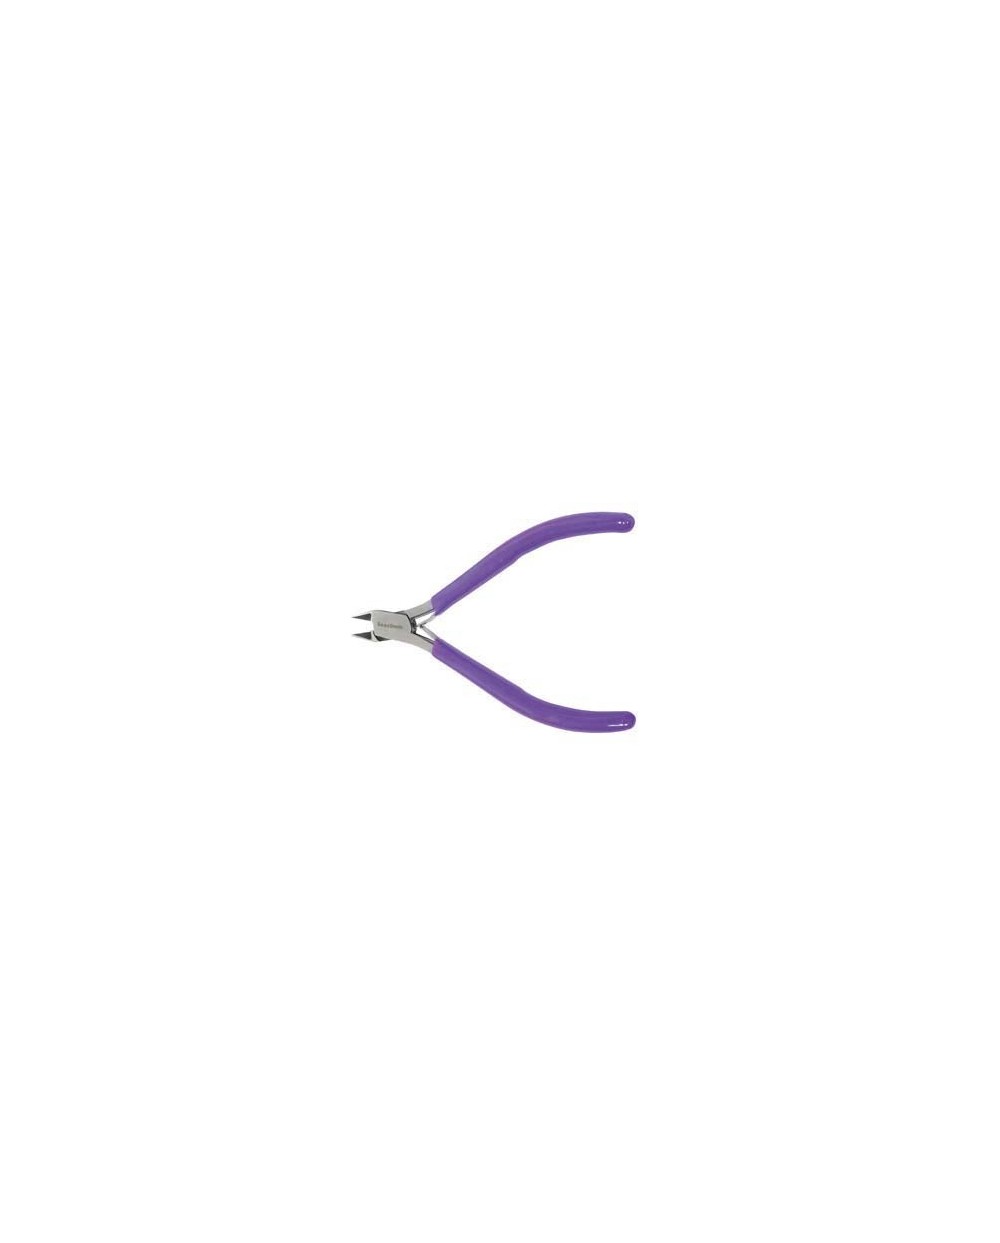 Replės šoniniam vielutės kirpimui su violetine rankenėle, 115cm, 1 vnt.